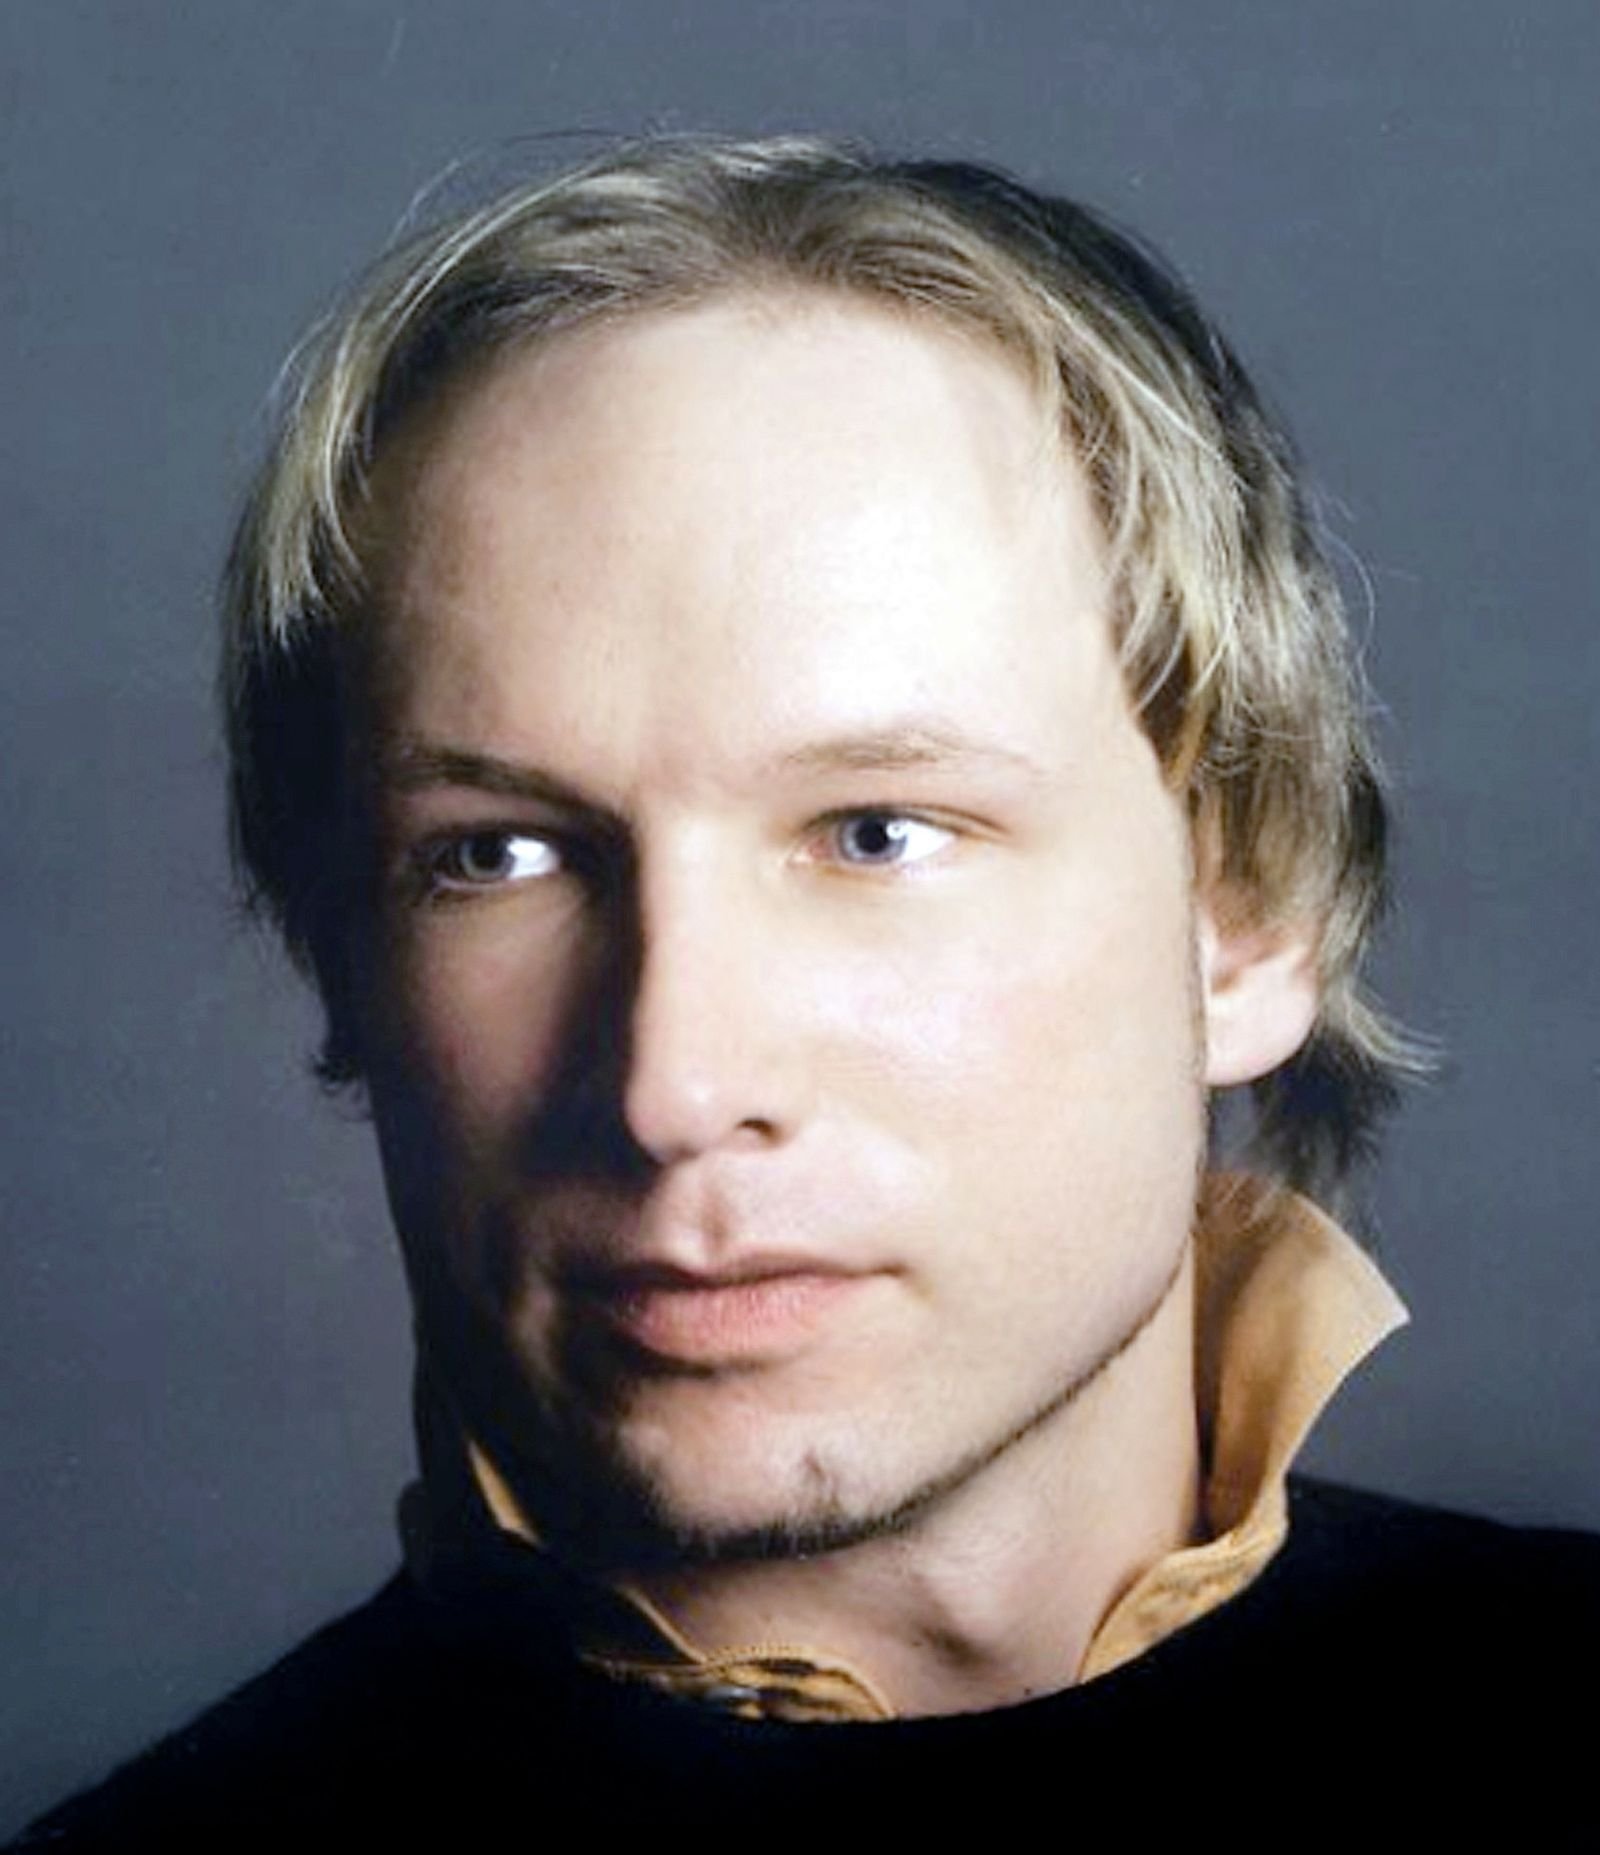 (Anders Breivik)